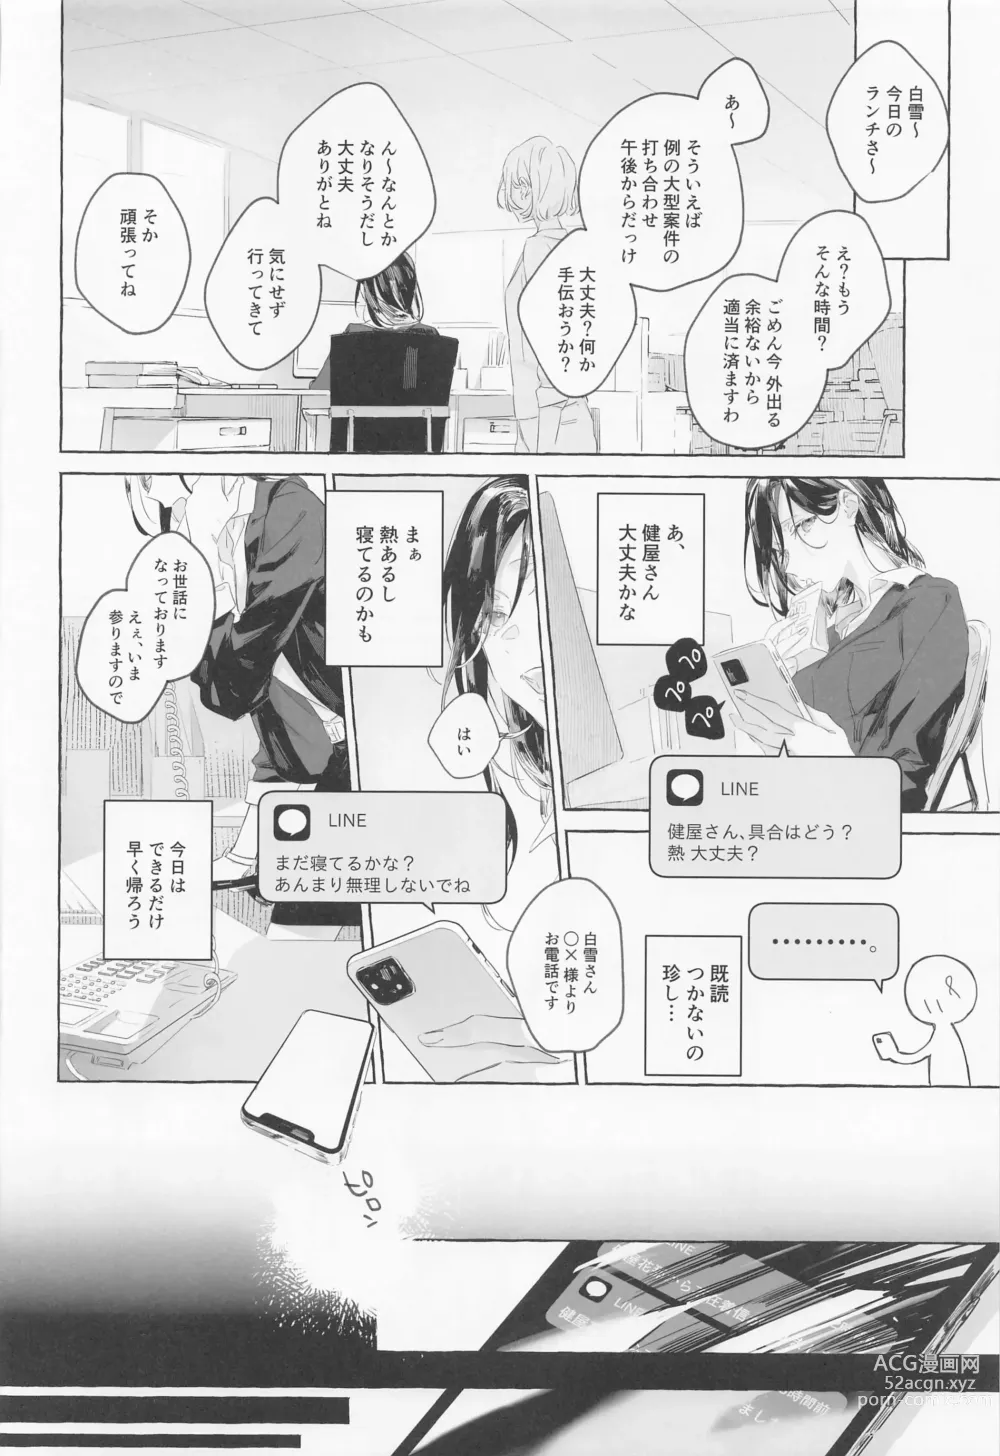 Page 9 of doujinshi Gomen ne, xxx Dekinakute - Im Sorry, I Can't xxx